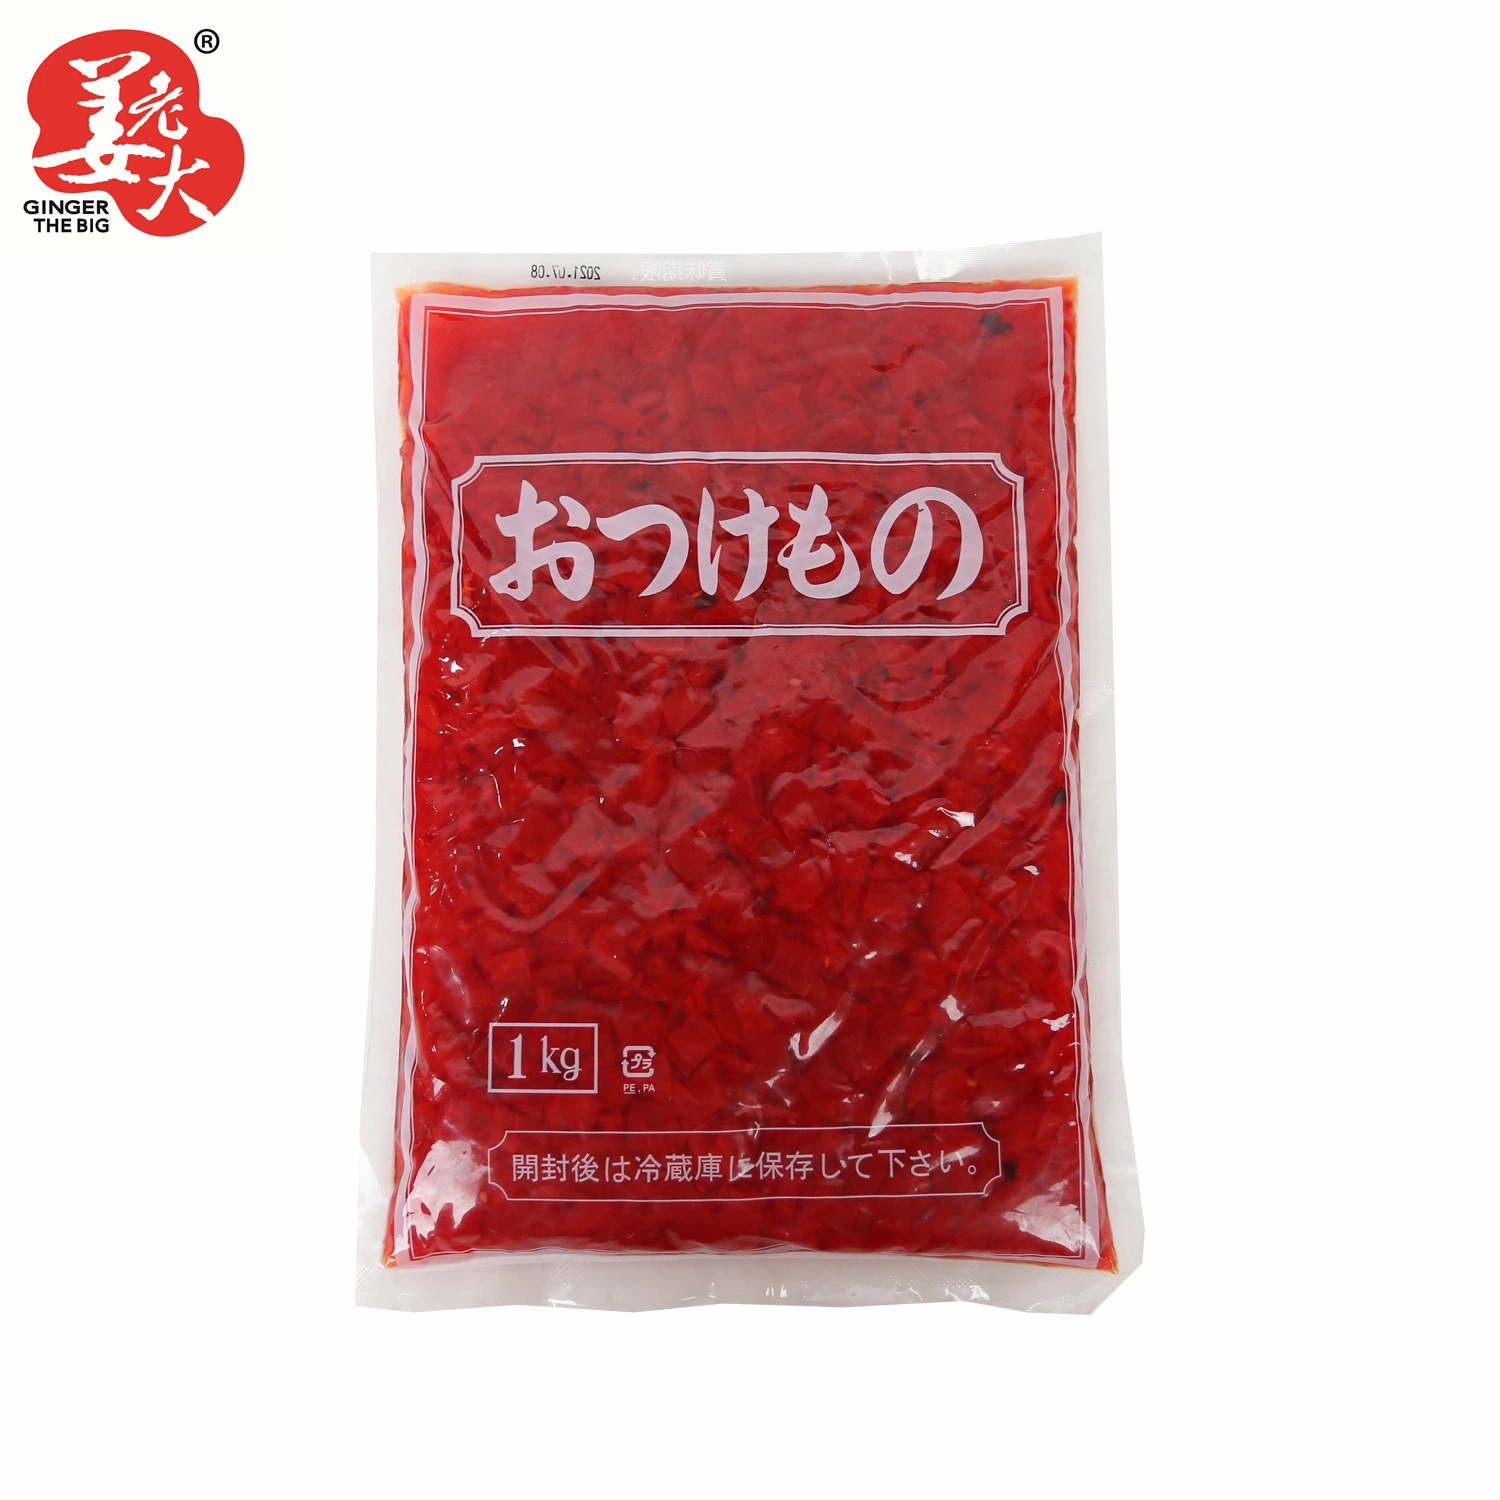 1kg Japanese Cuisine Fukushinzuke Pickled Radish